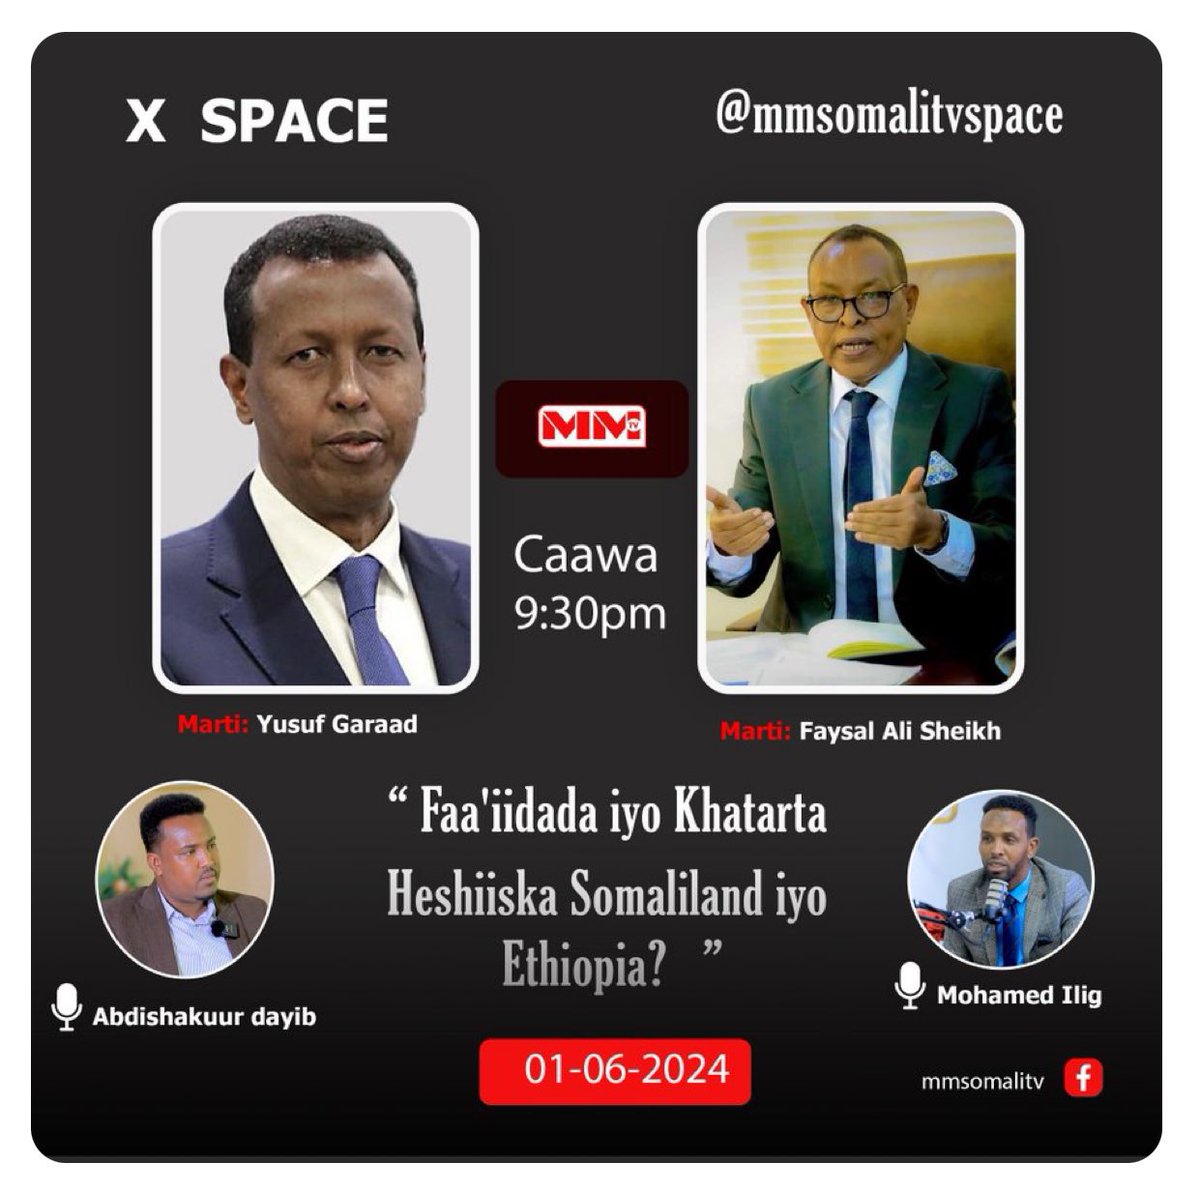 FESOJ_SOMALIA tweet picture